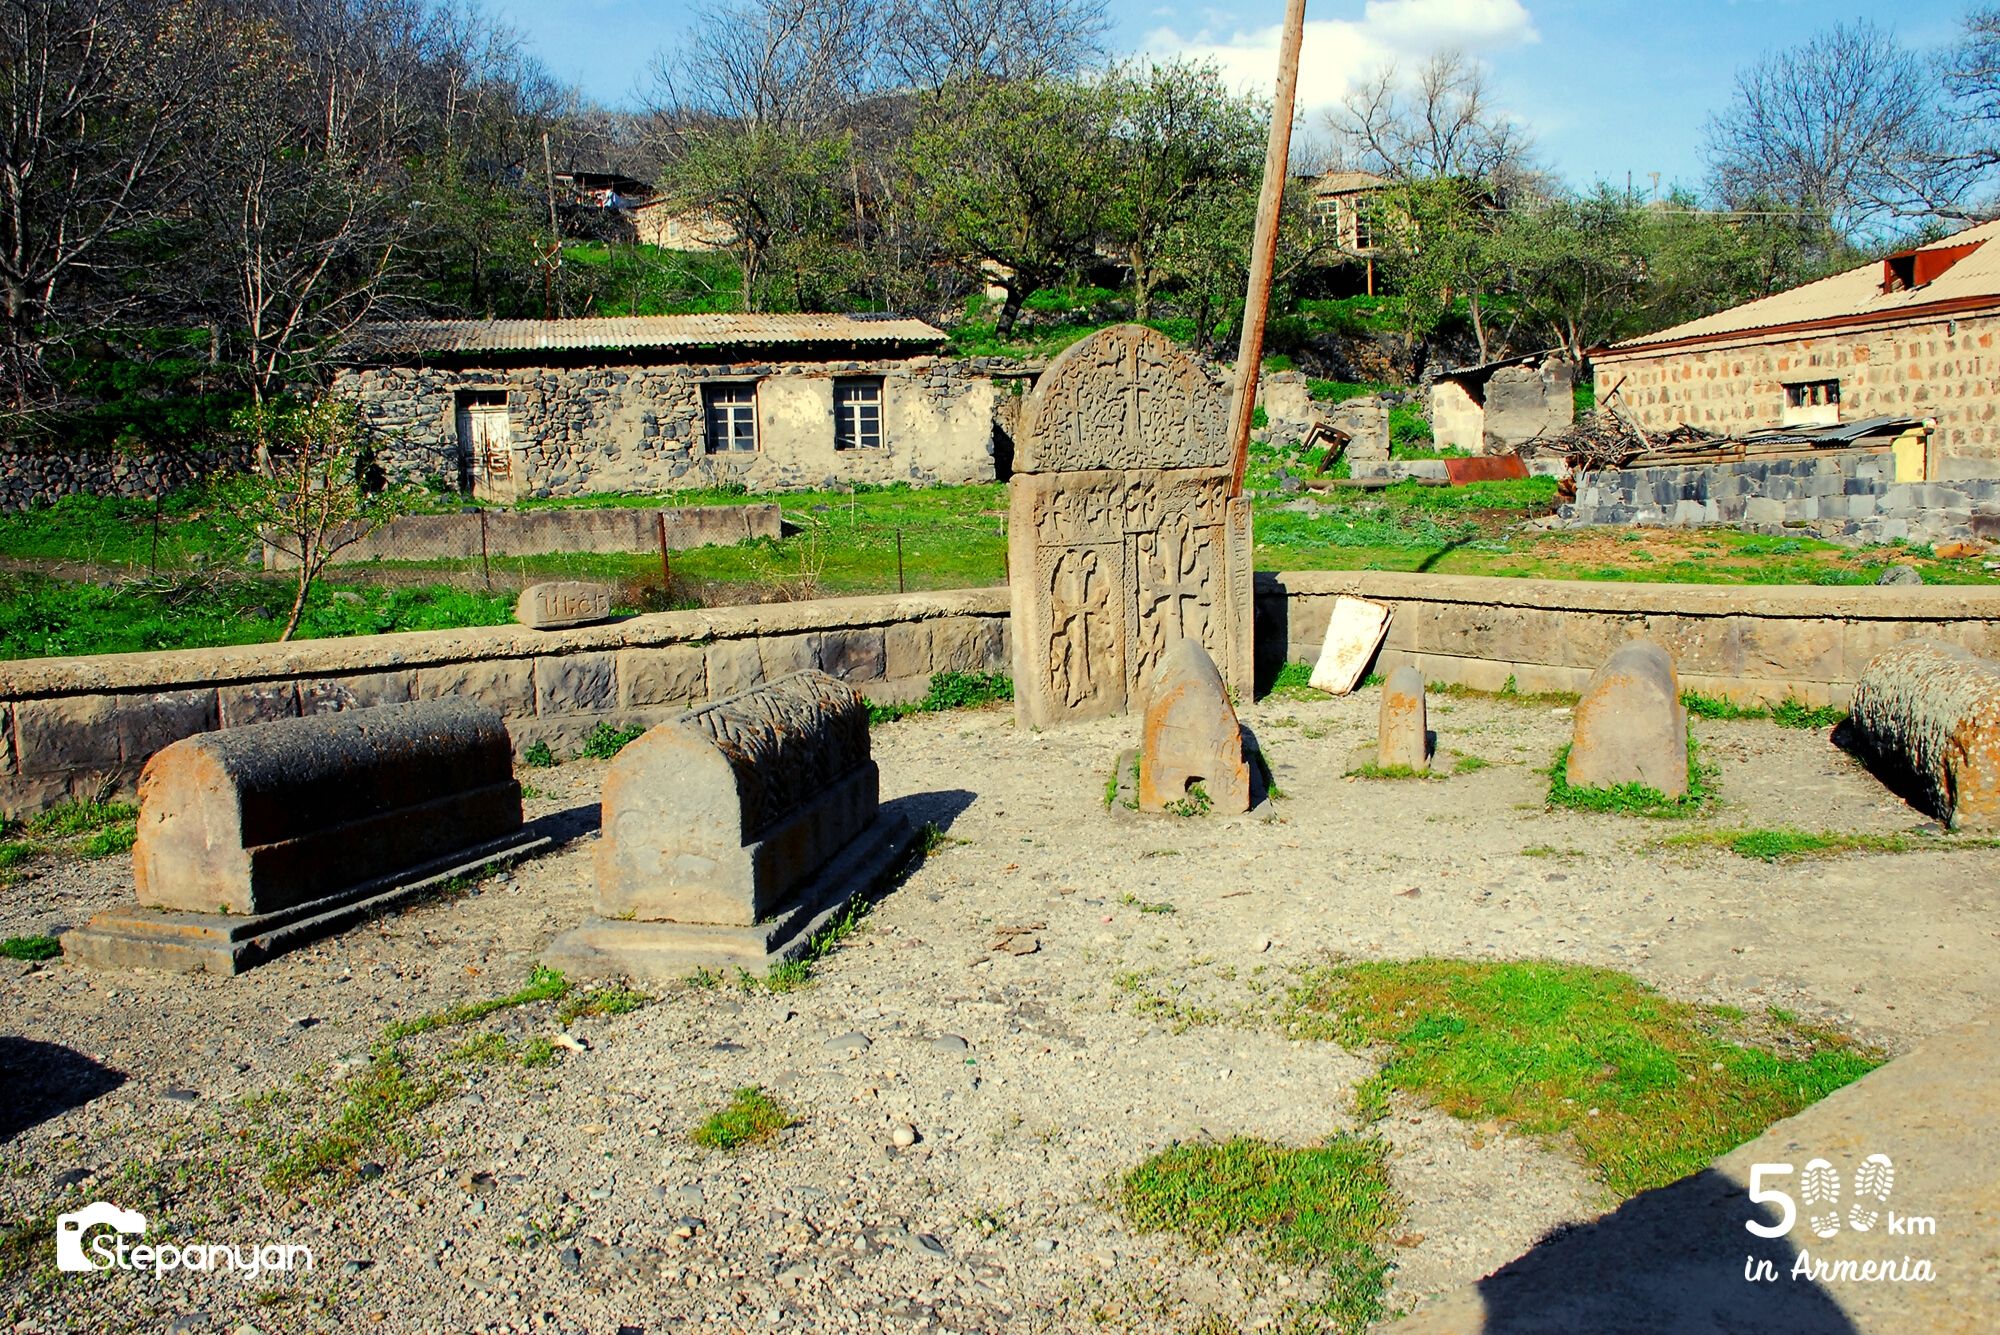 Եղեգիս - 500 կմ Հայաստանում